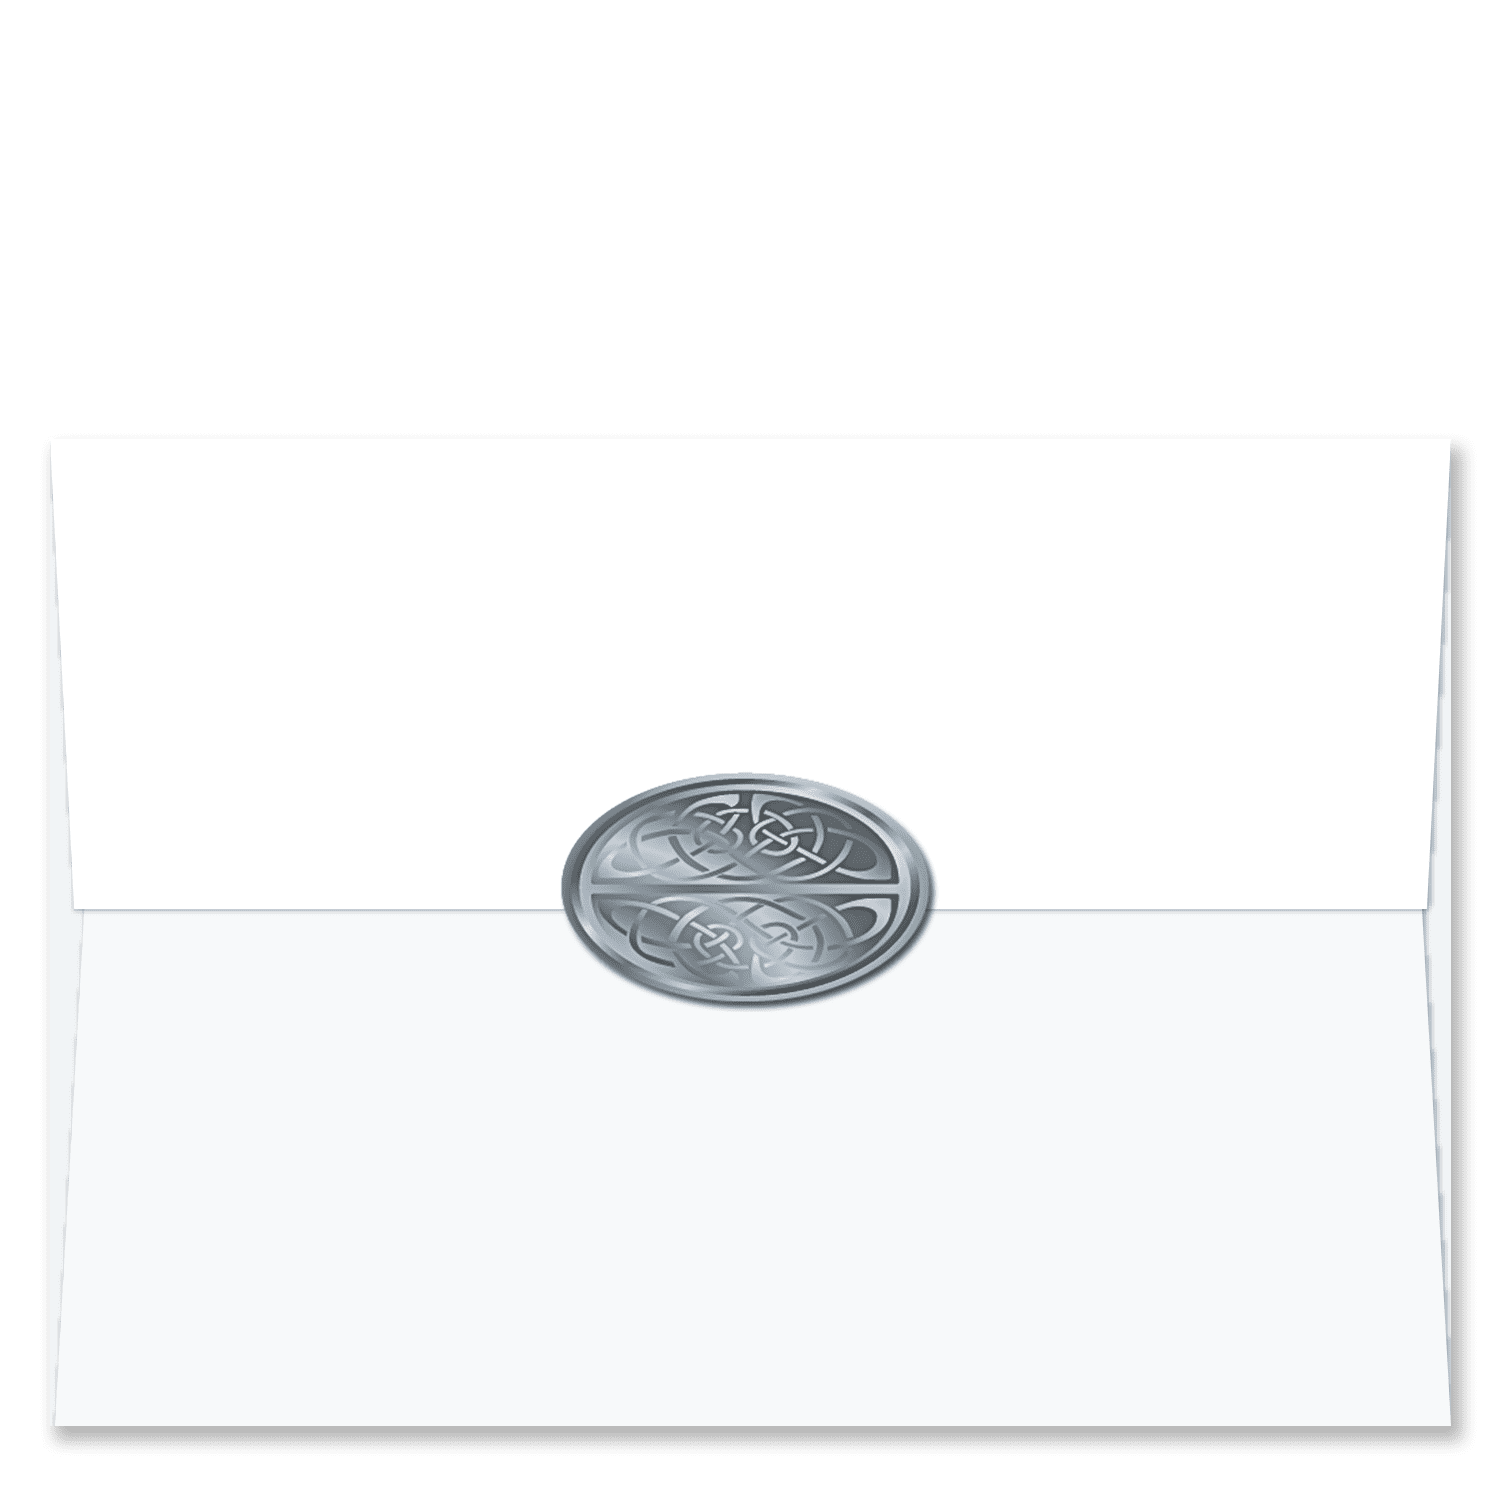 Envelope Seals - Designs for Envelope Seals